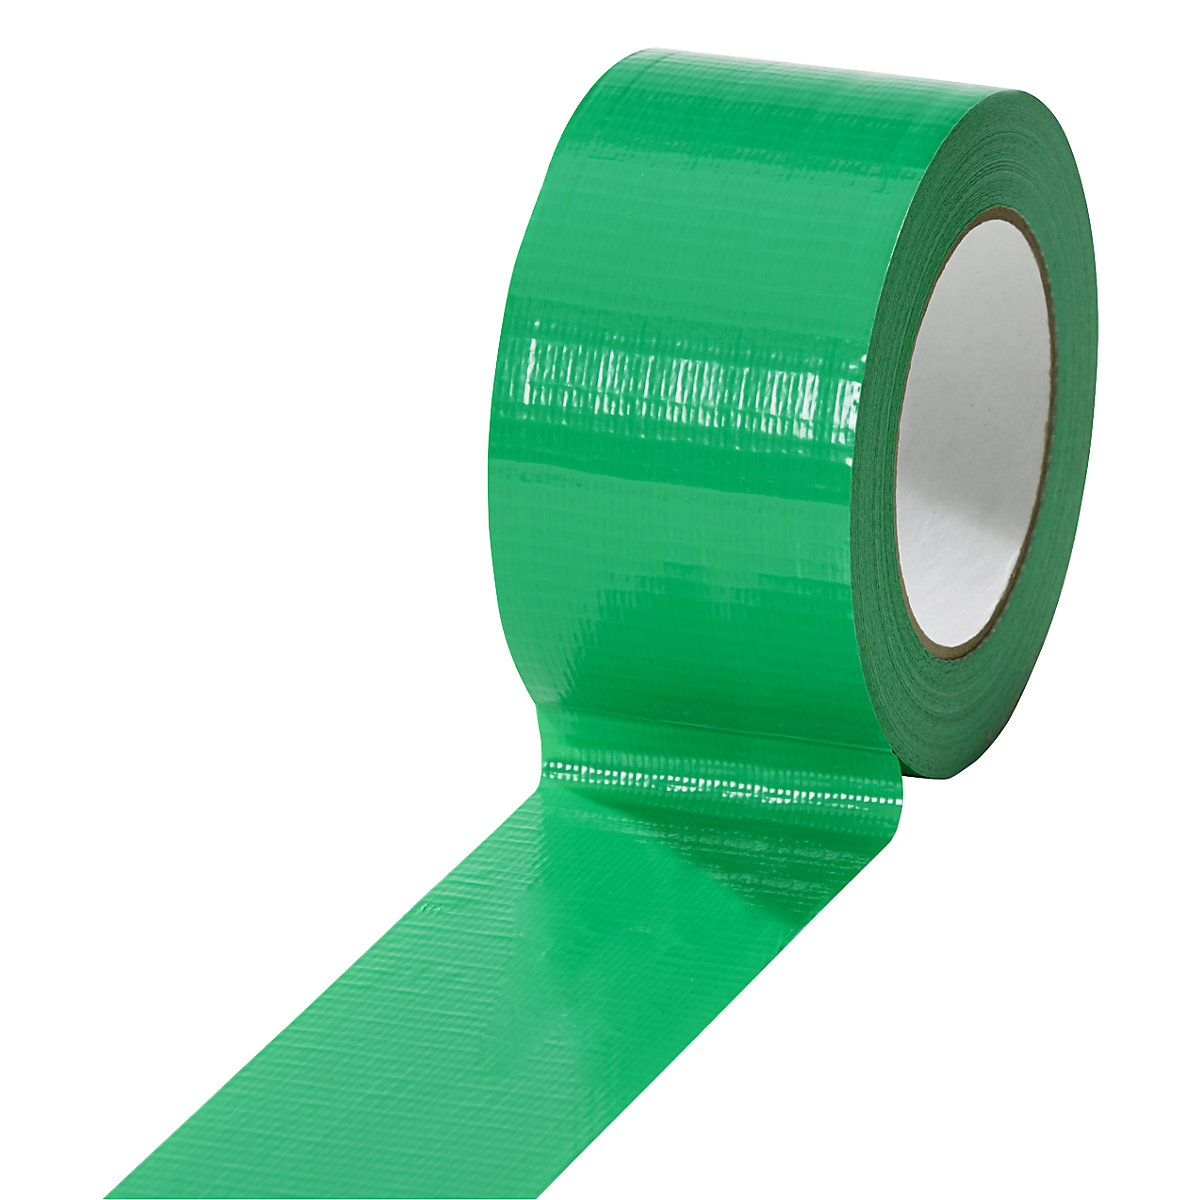 Cinta de tejido, en diferentes colores, UE 18 rollos, verde, anchura de cinta 50 mm-18